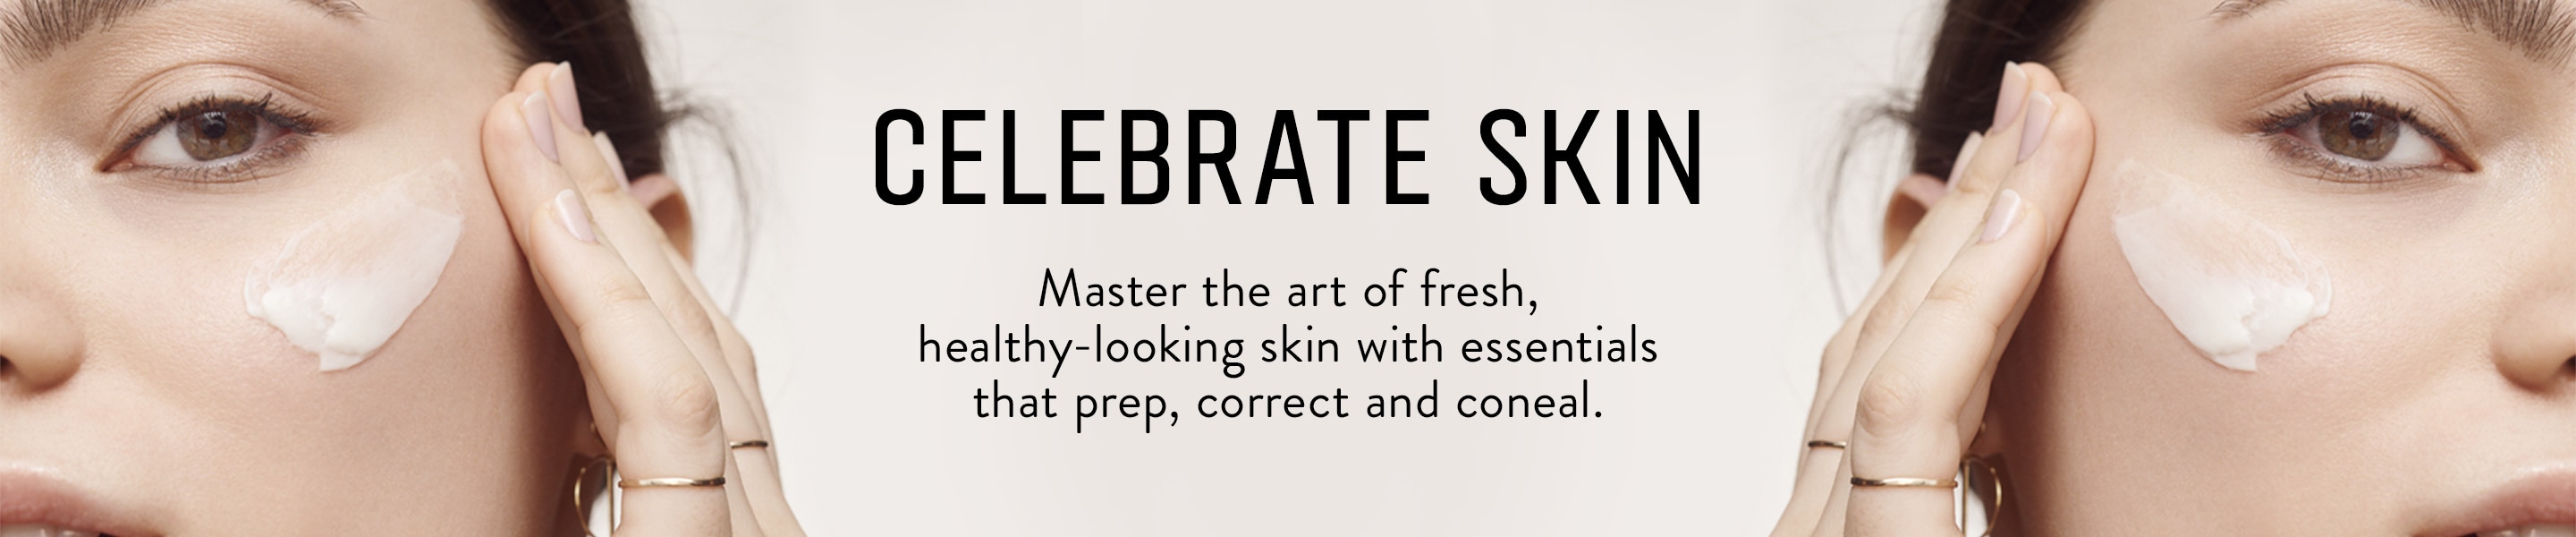 Celebrate Skin